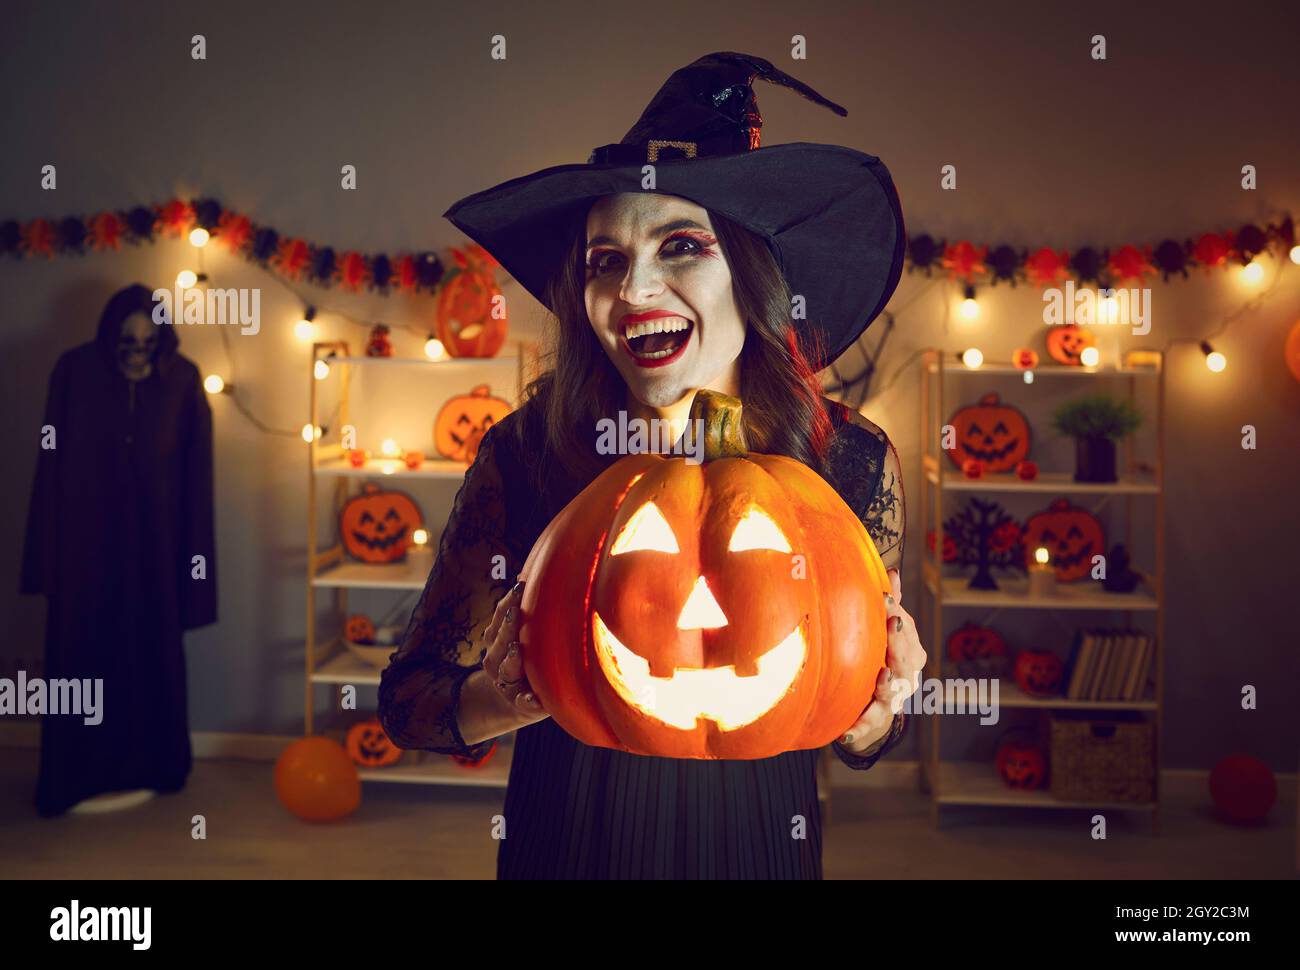 Halloween-Porträt der gruseligen und bösen Hexe mit glühenden Jack-o-Laterne in den Händen. Stockfoto